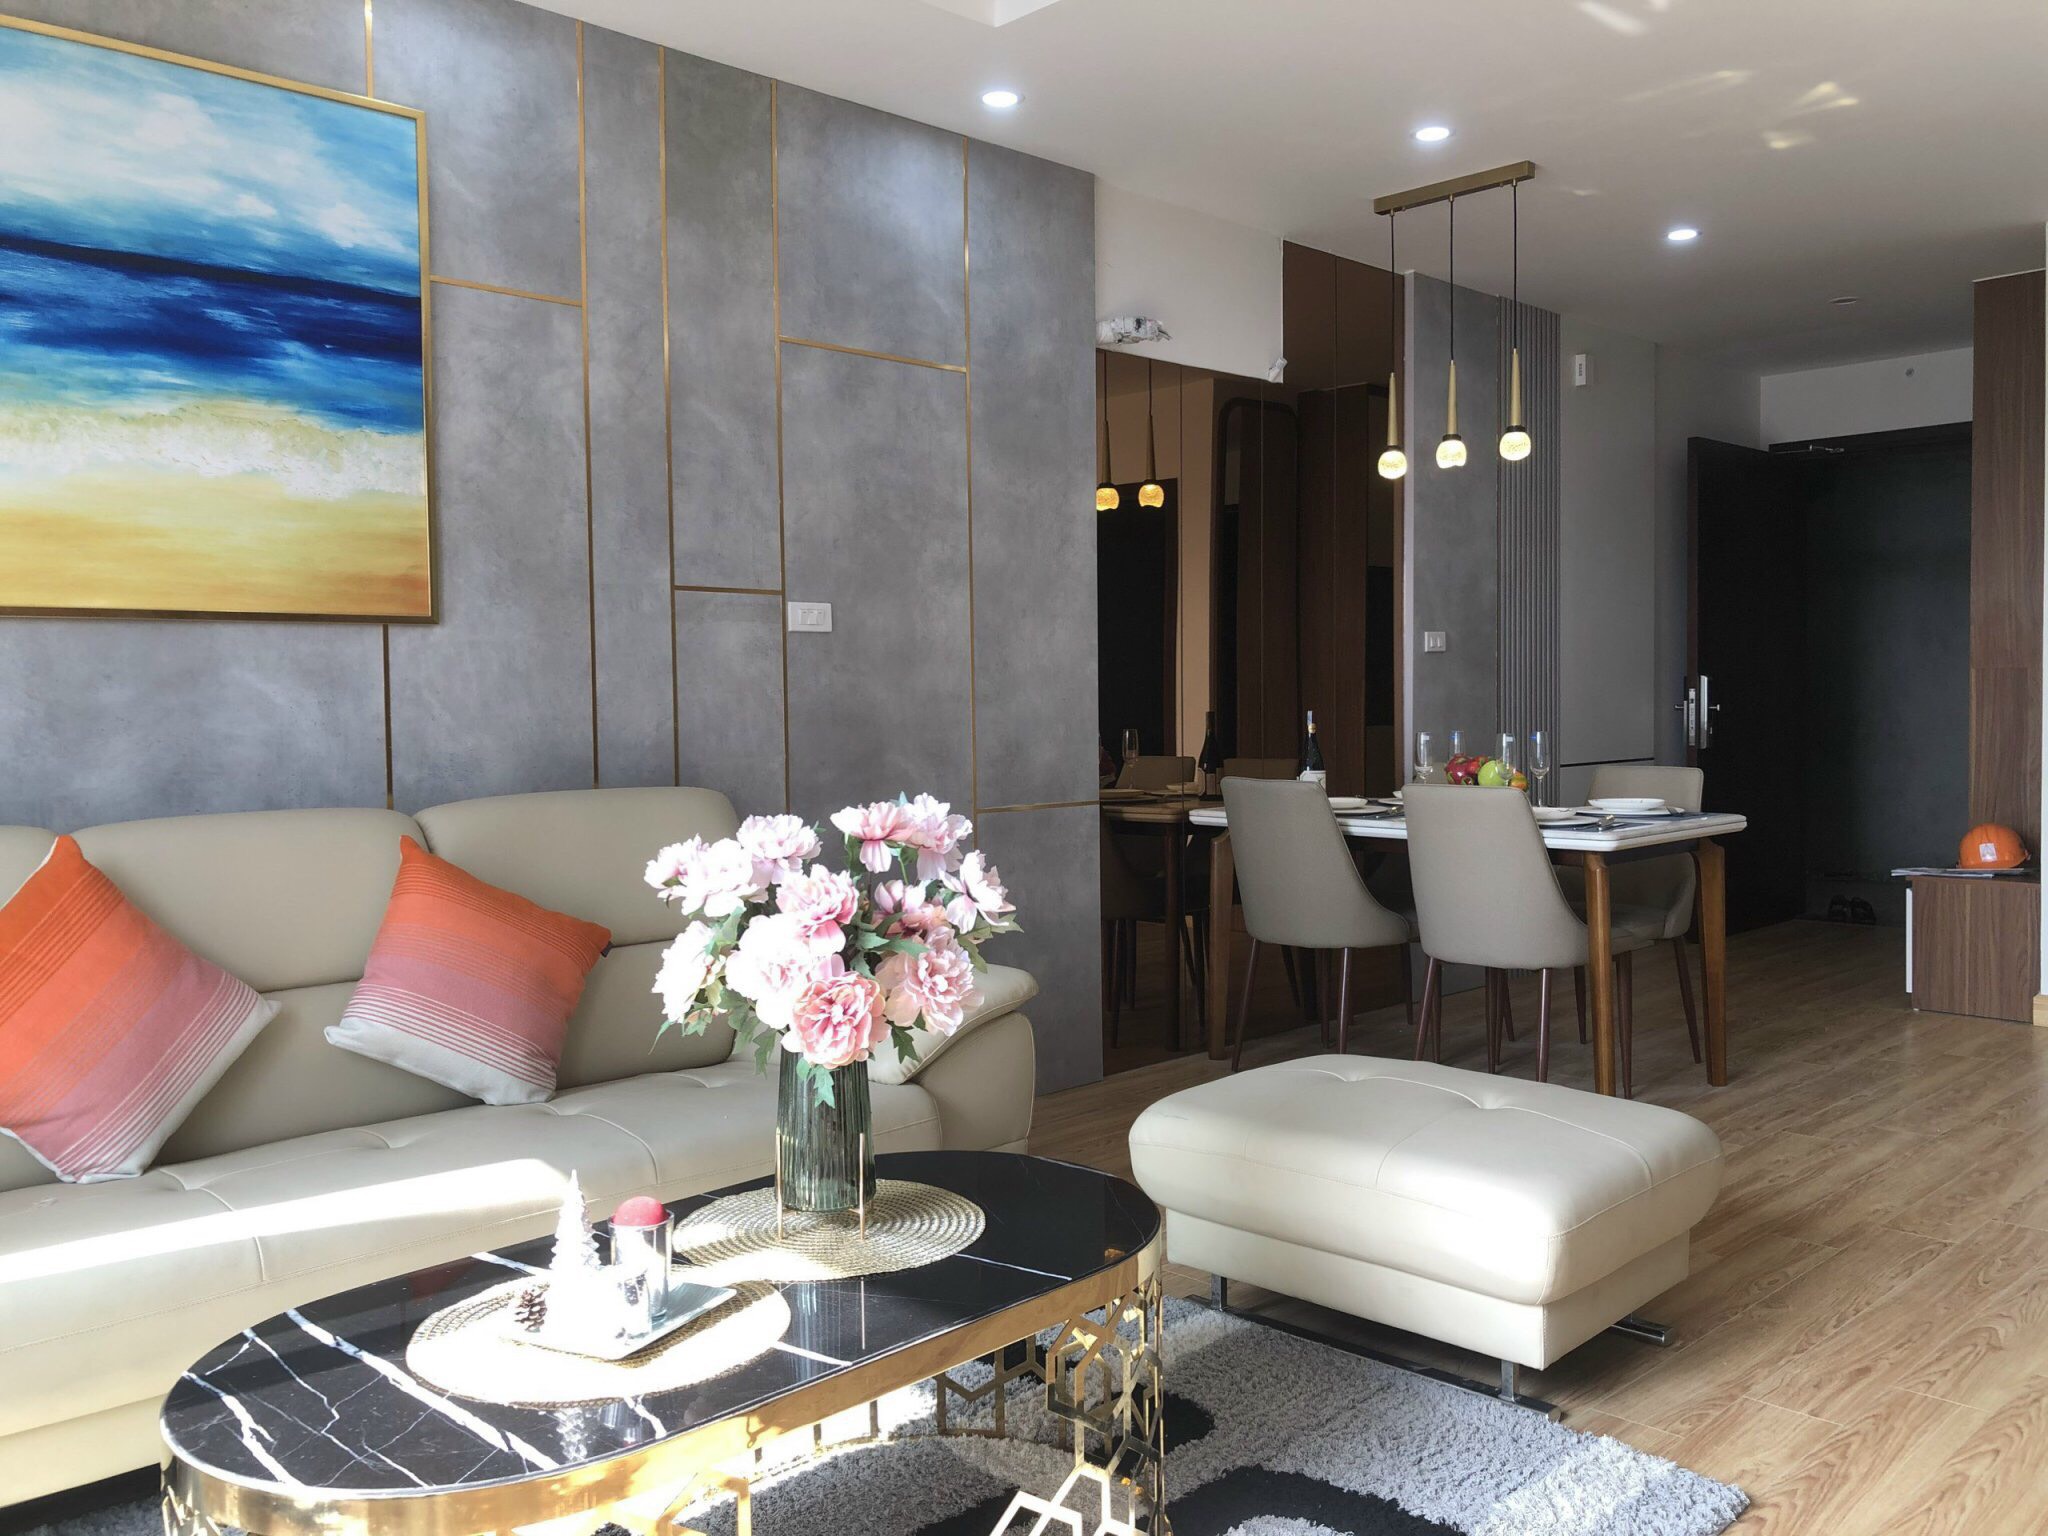 Cần bán căn hộ chung cư đạt tiêu chuẩn 5* tại TP Bắc Ninh